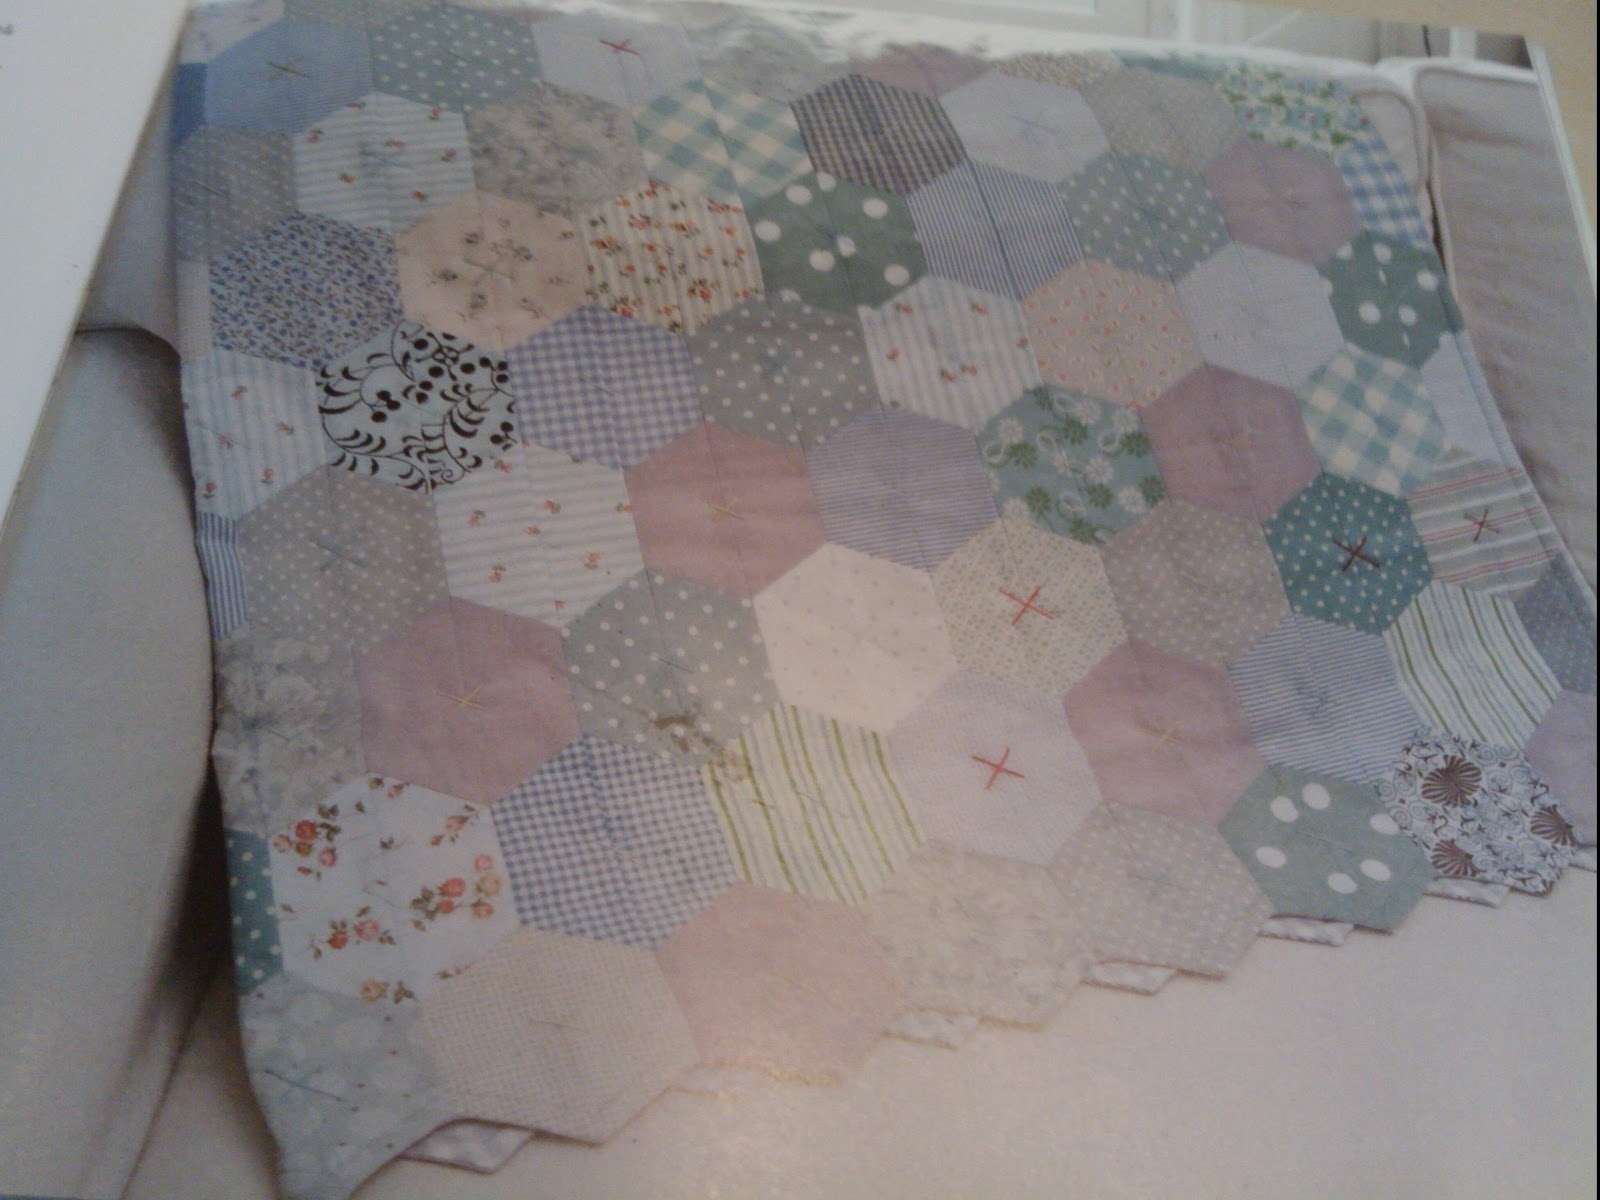 Half+hexagon+quilt